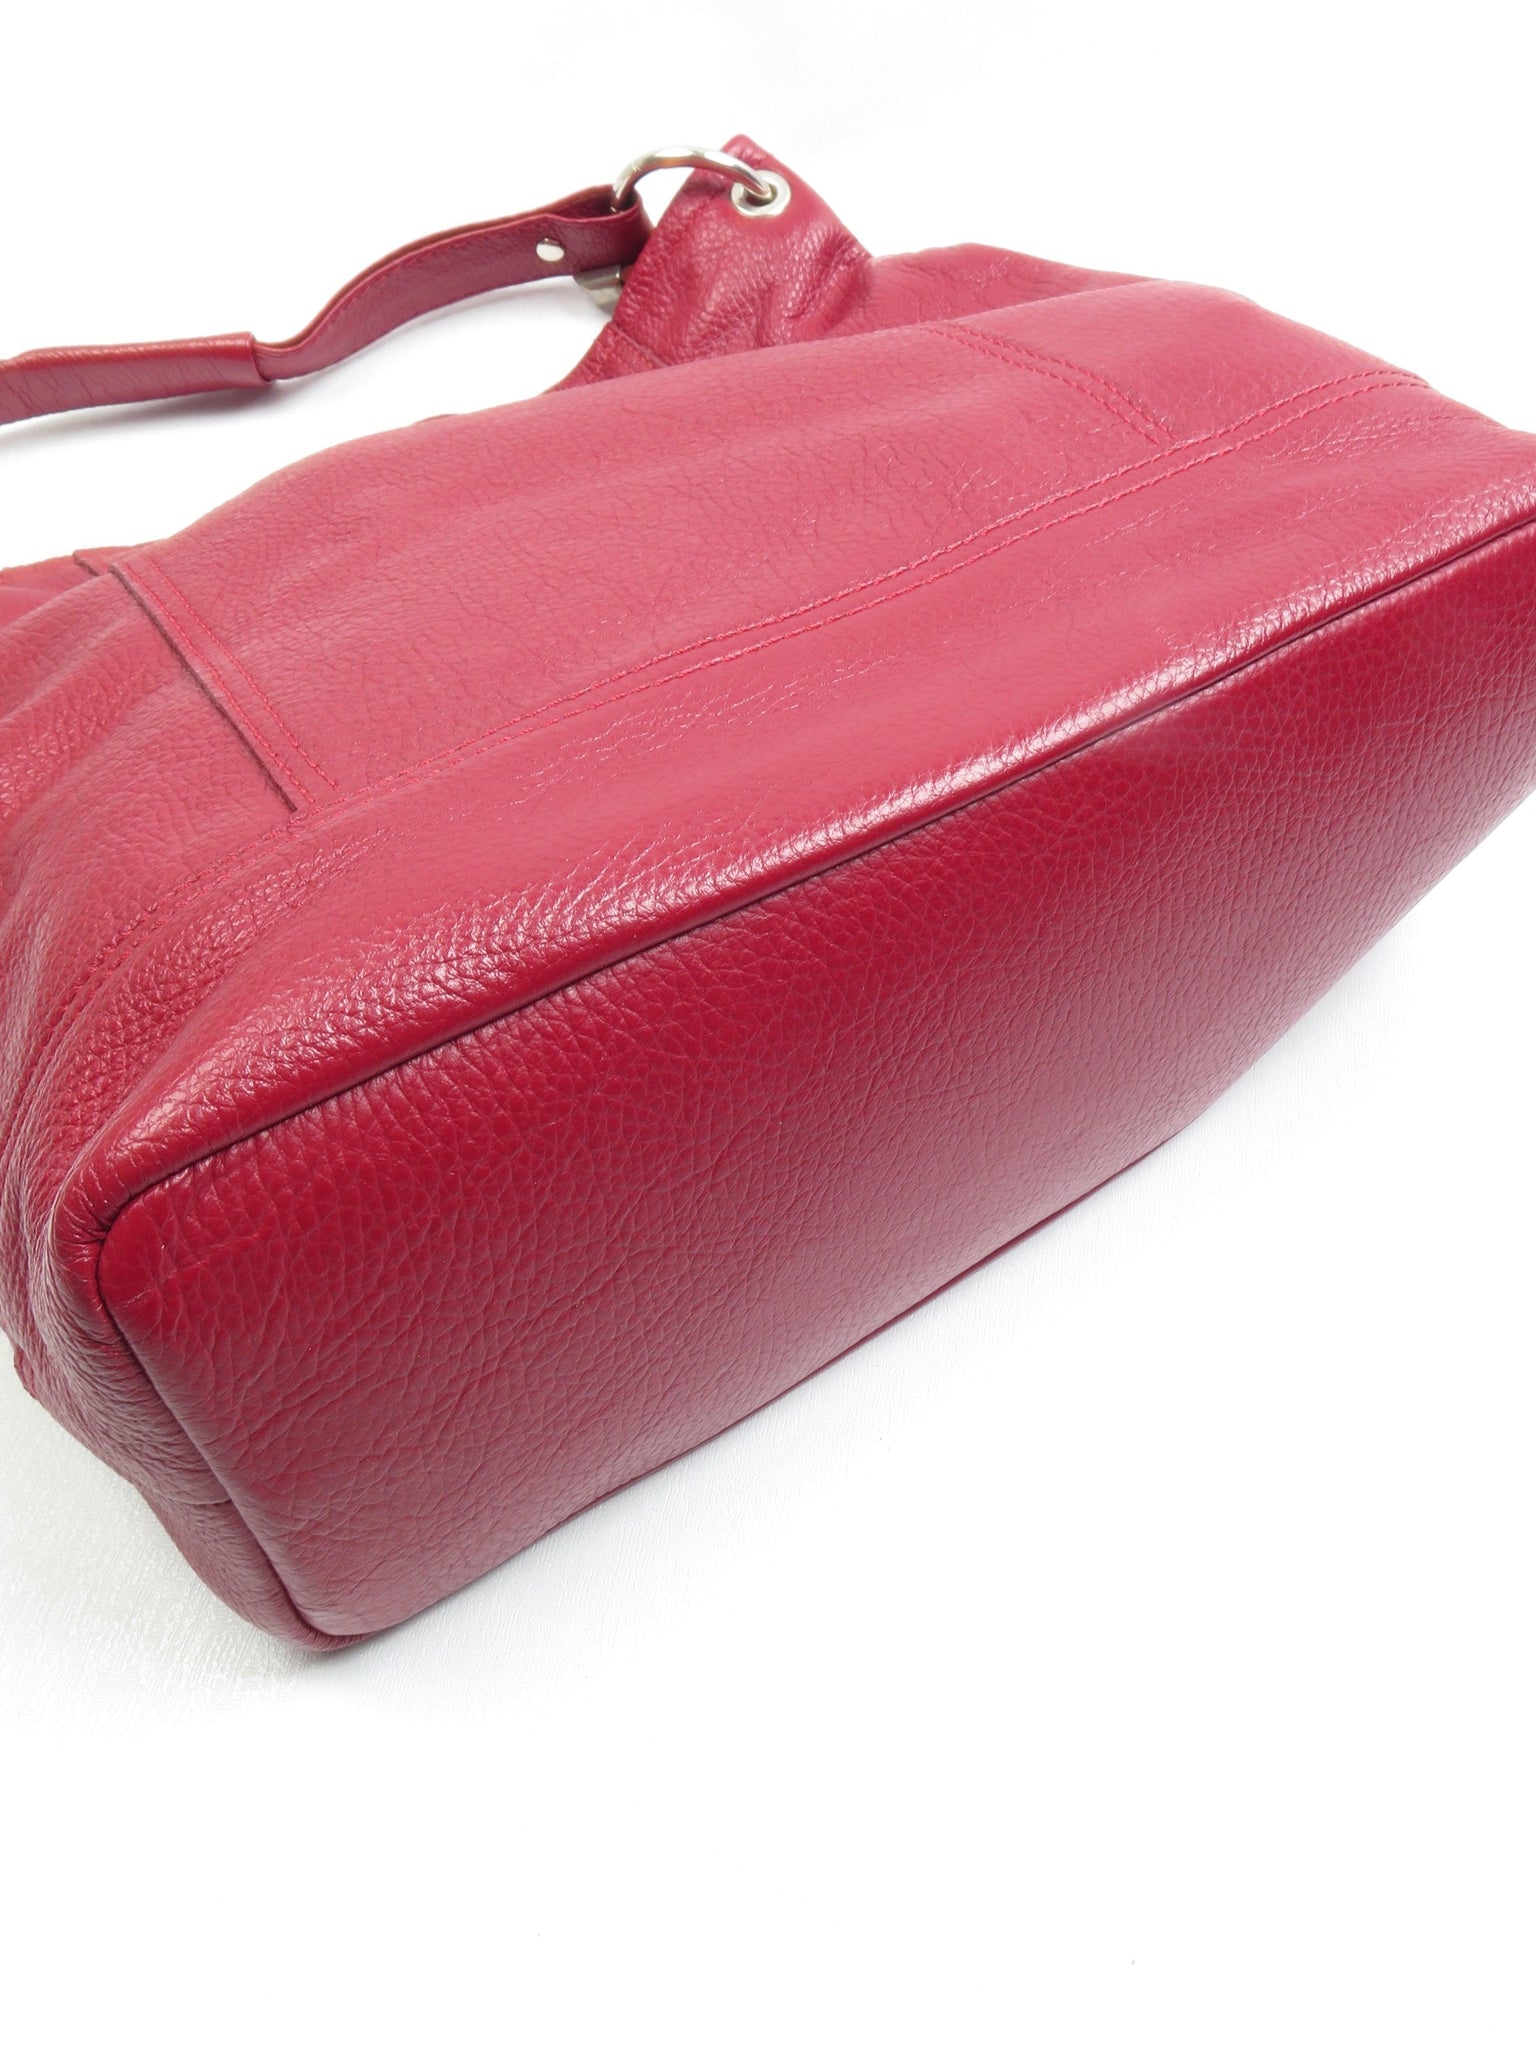 Wine Leather Hobo Shopper Shoulder Bag - The Harlequin